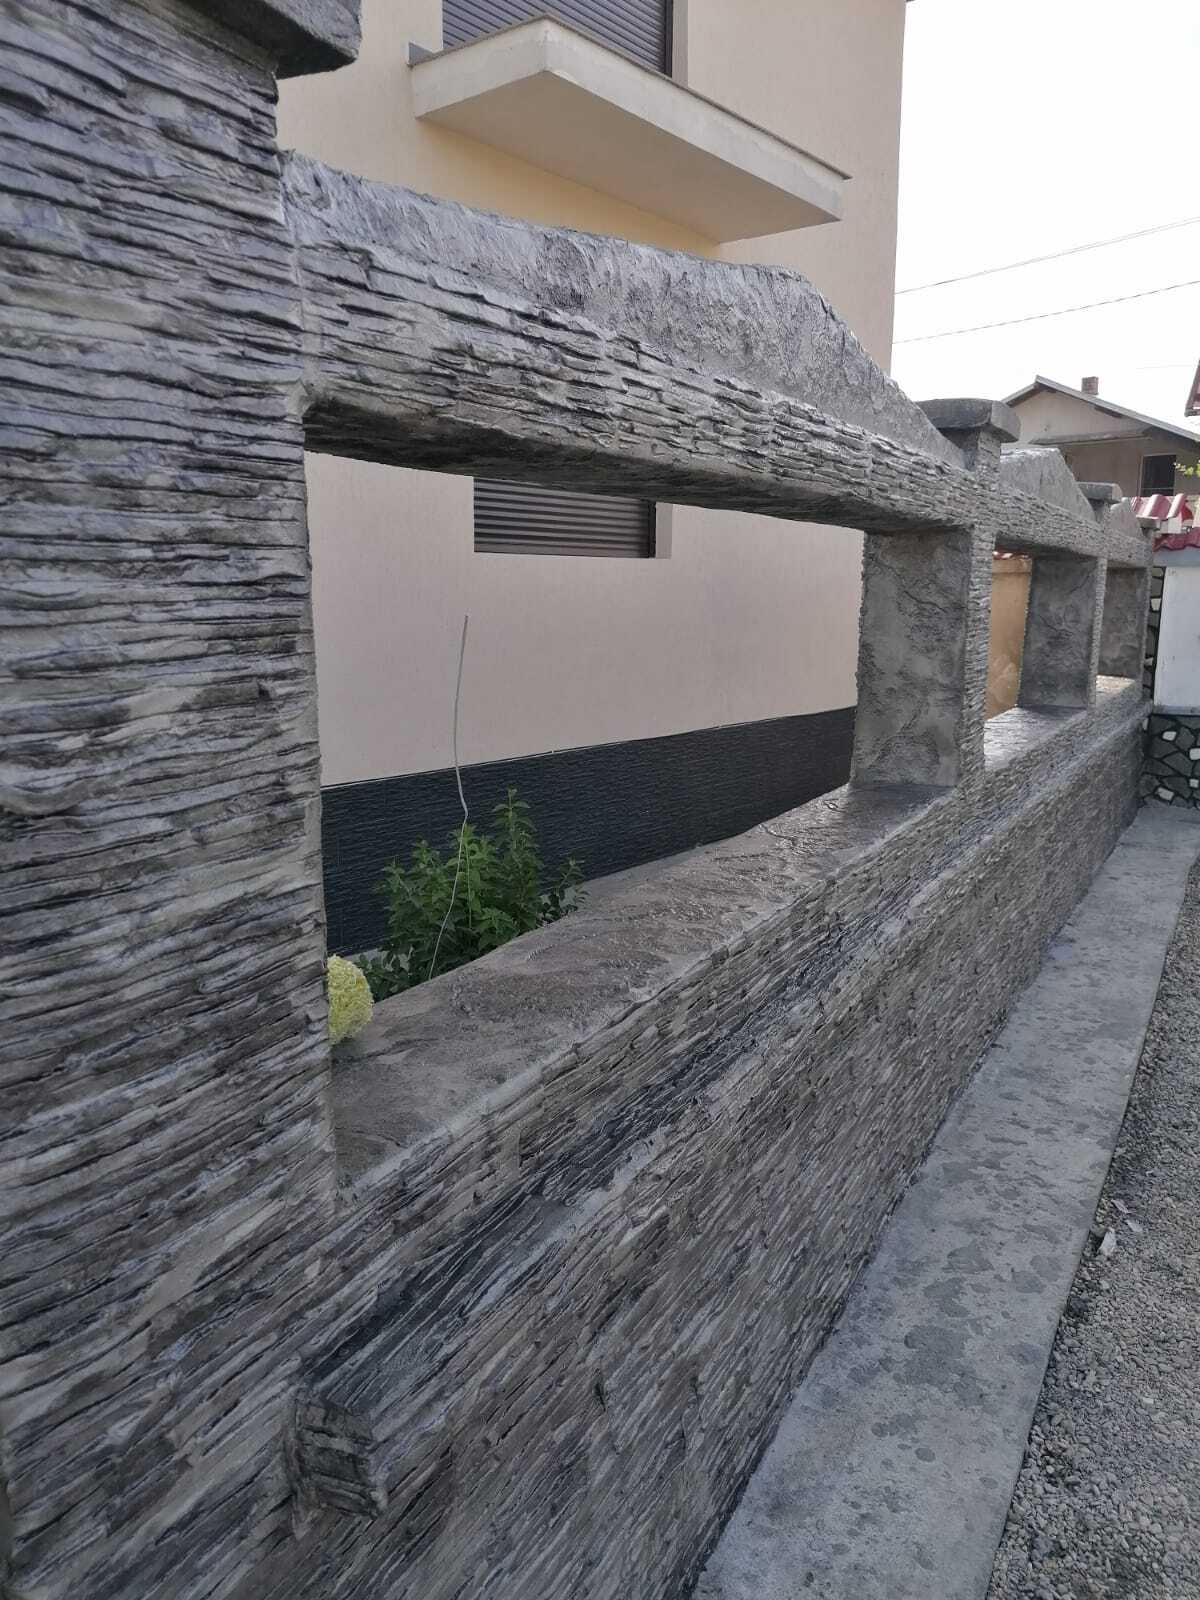 立体印刷混凝土模仿石头的房屋立面